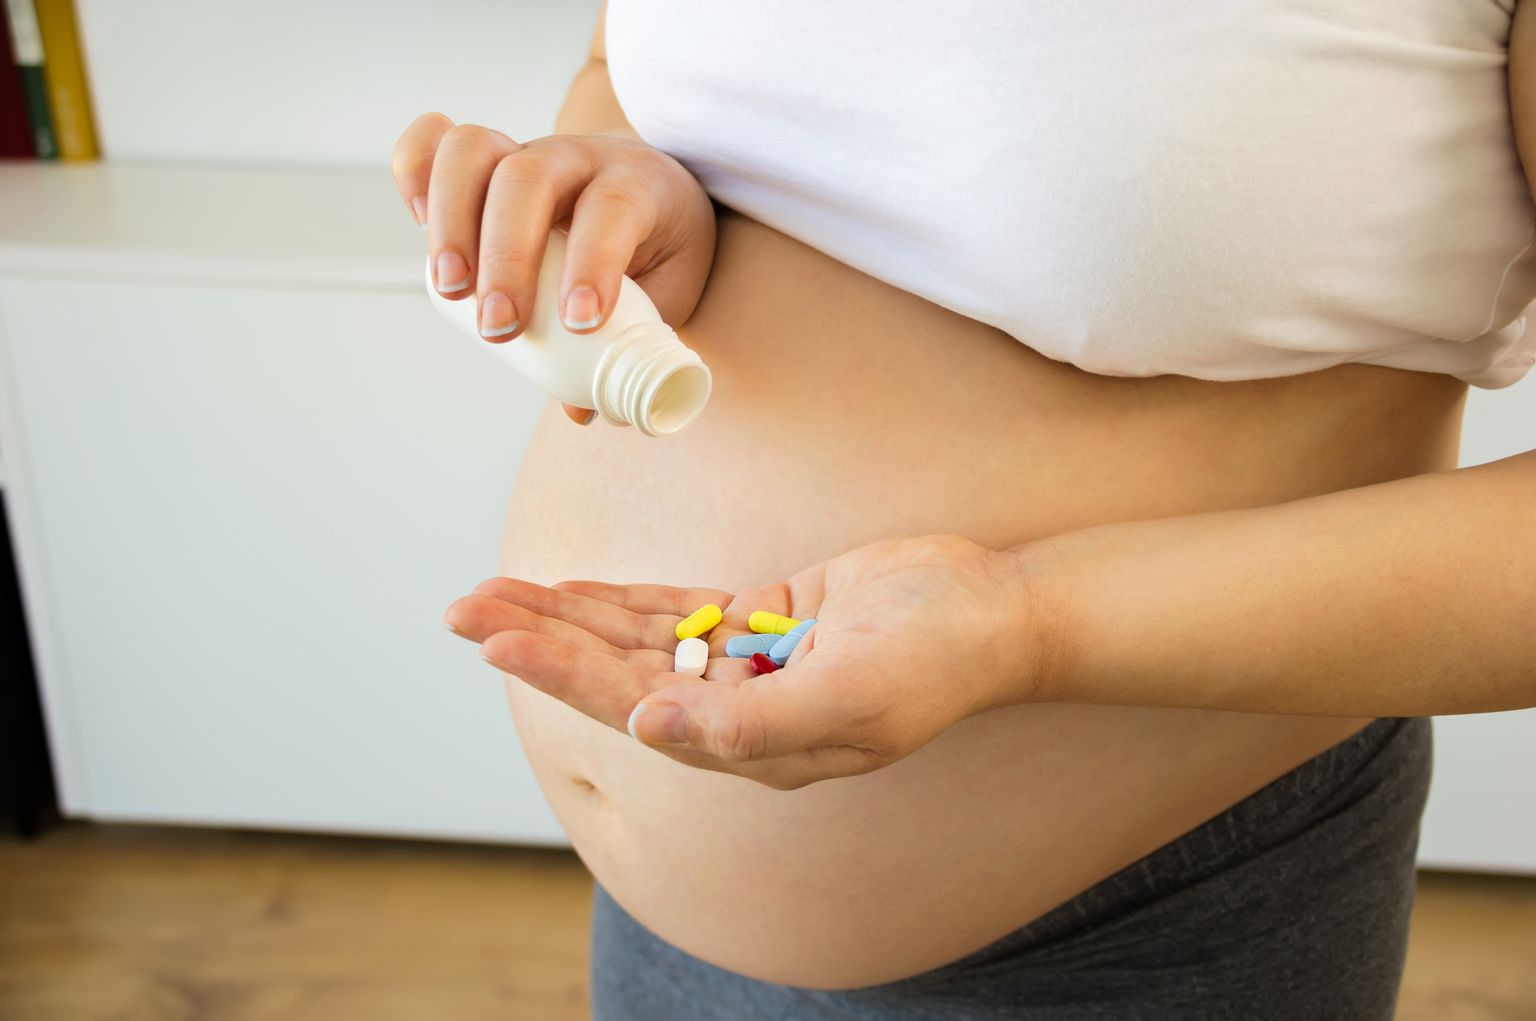 Medicijnen gebruiken tijdens de zwangerschap